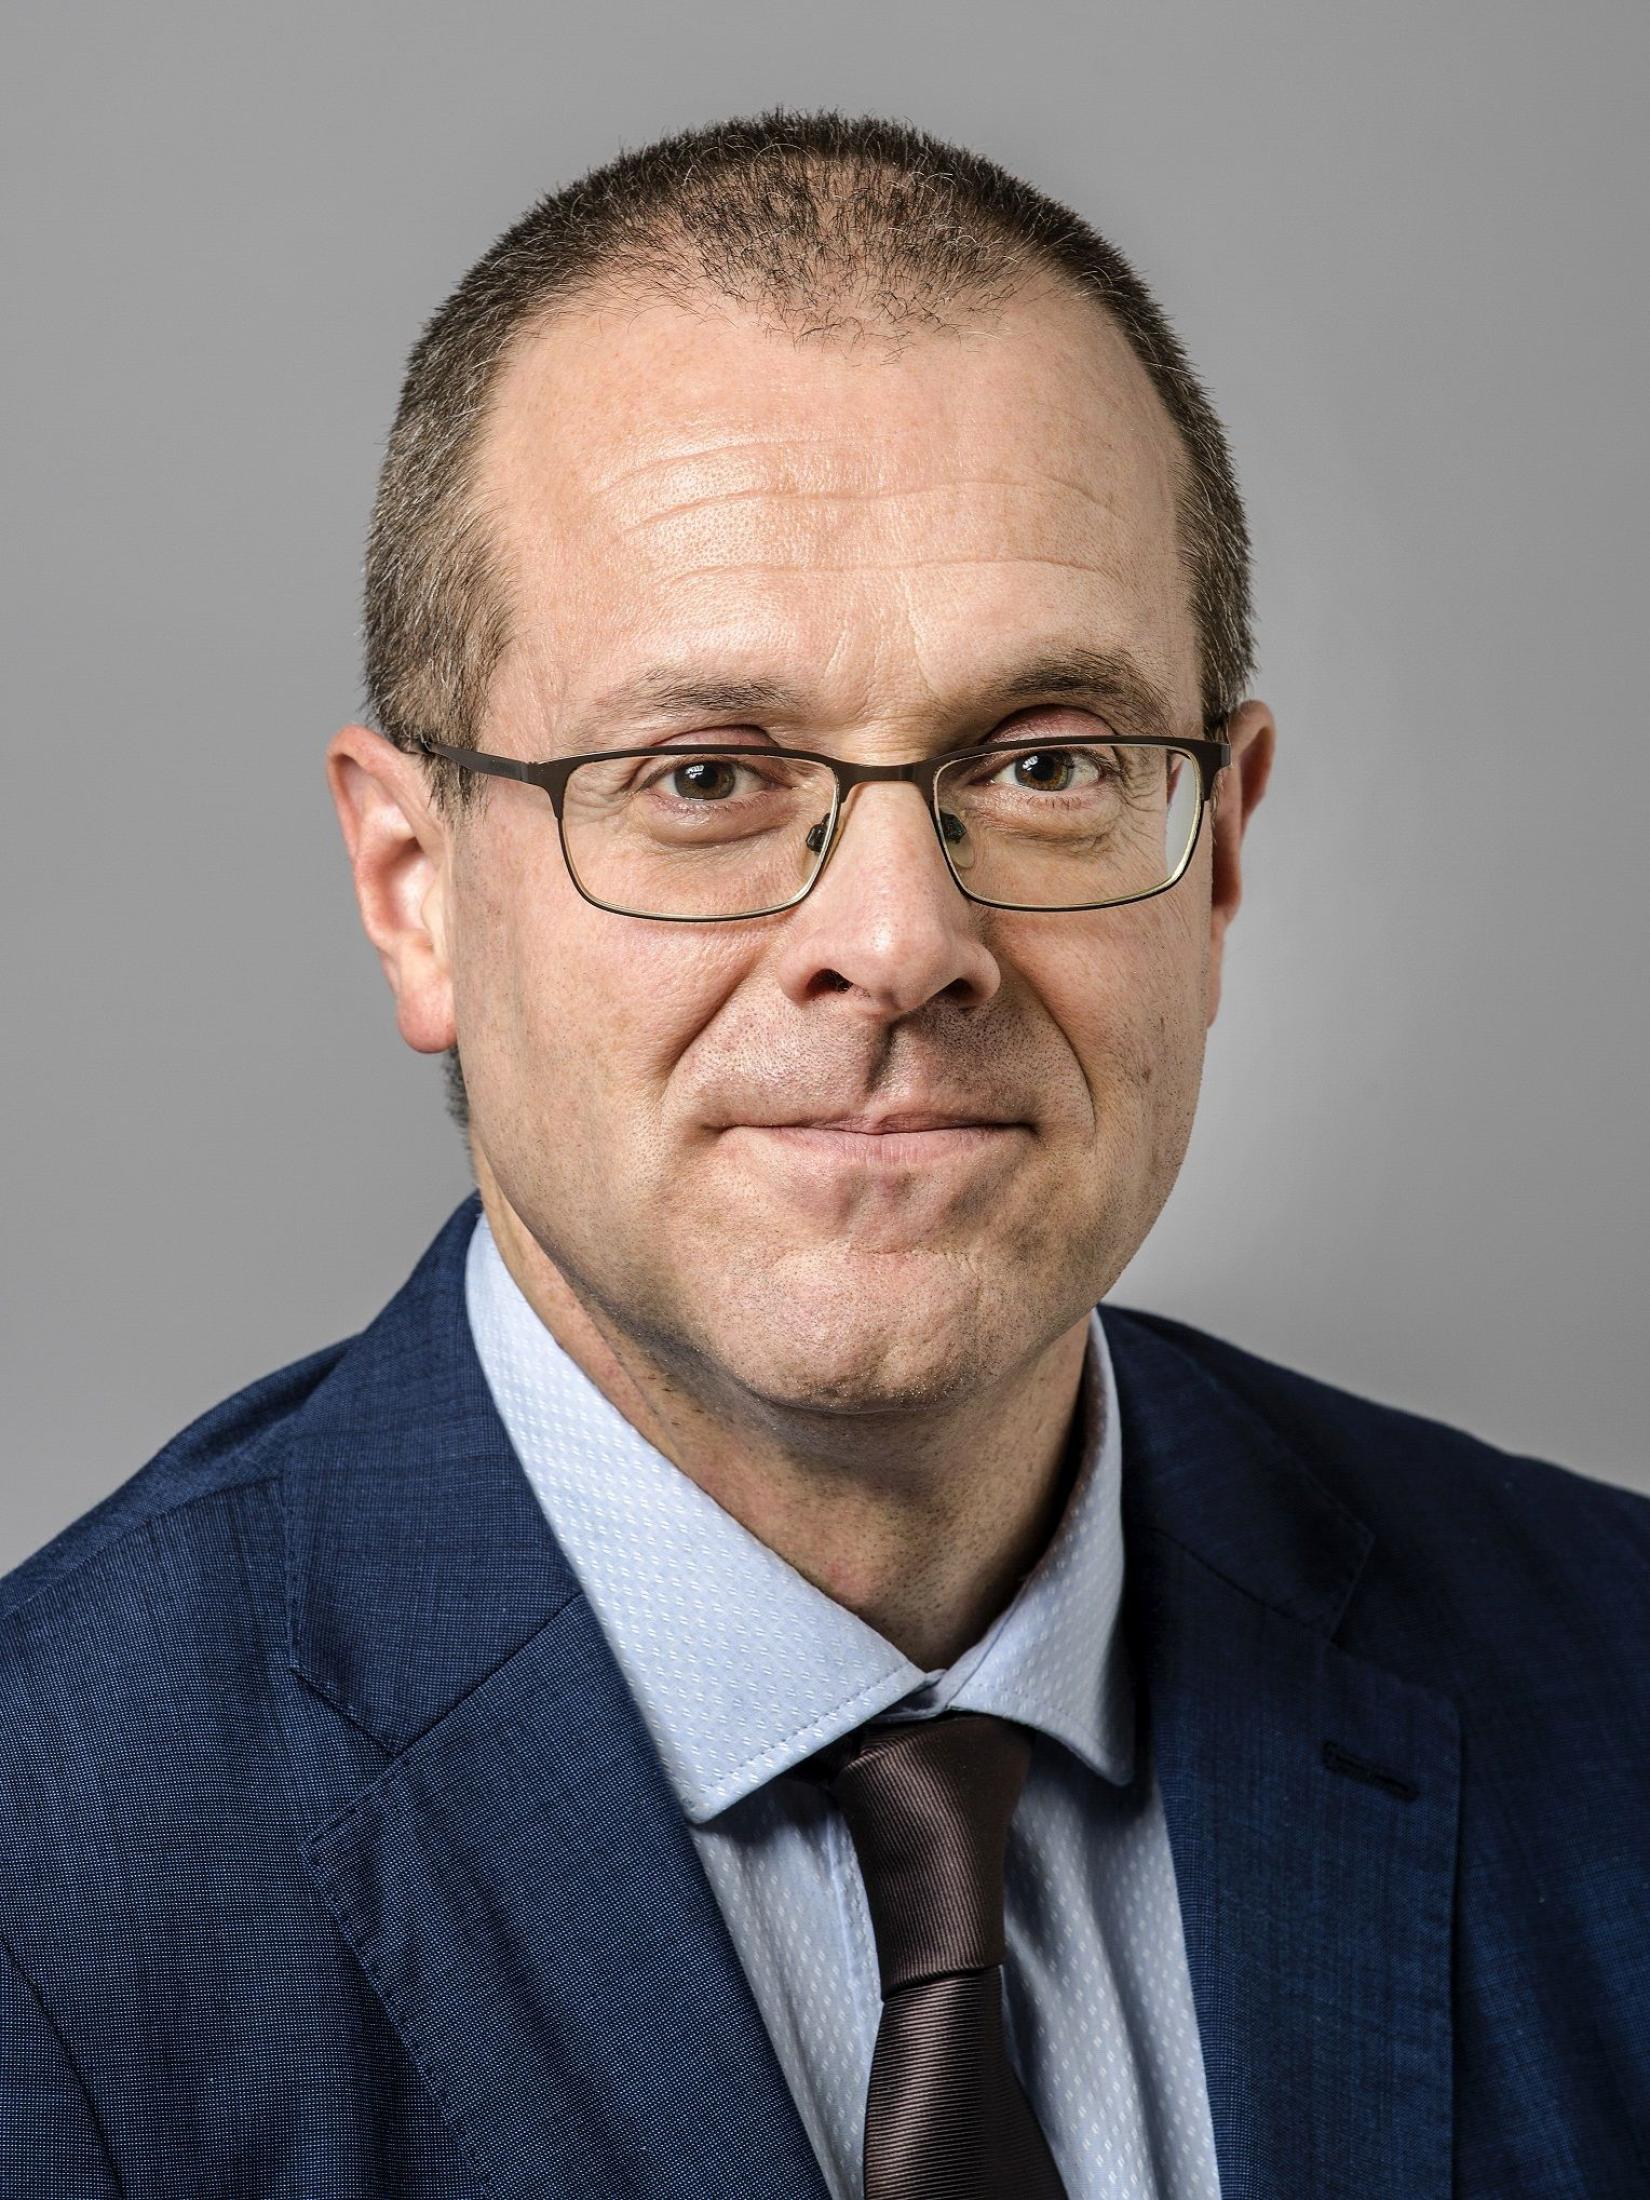 Д-р Ханс Клюге, директор Европейского регионального бюро ВОЗ